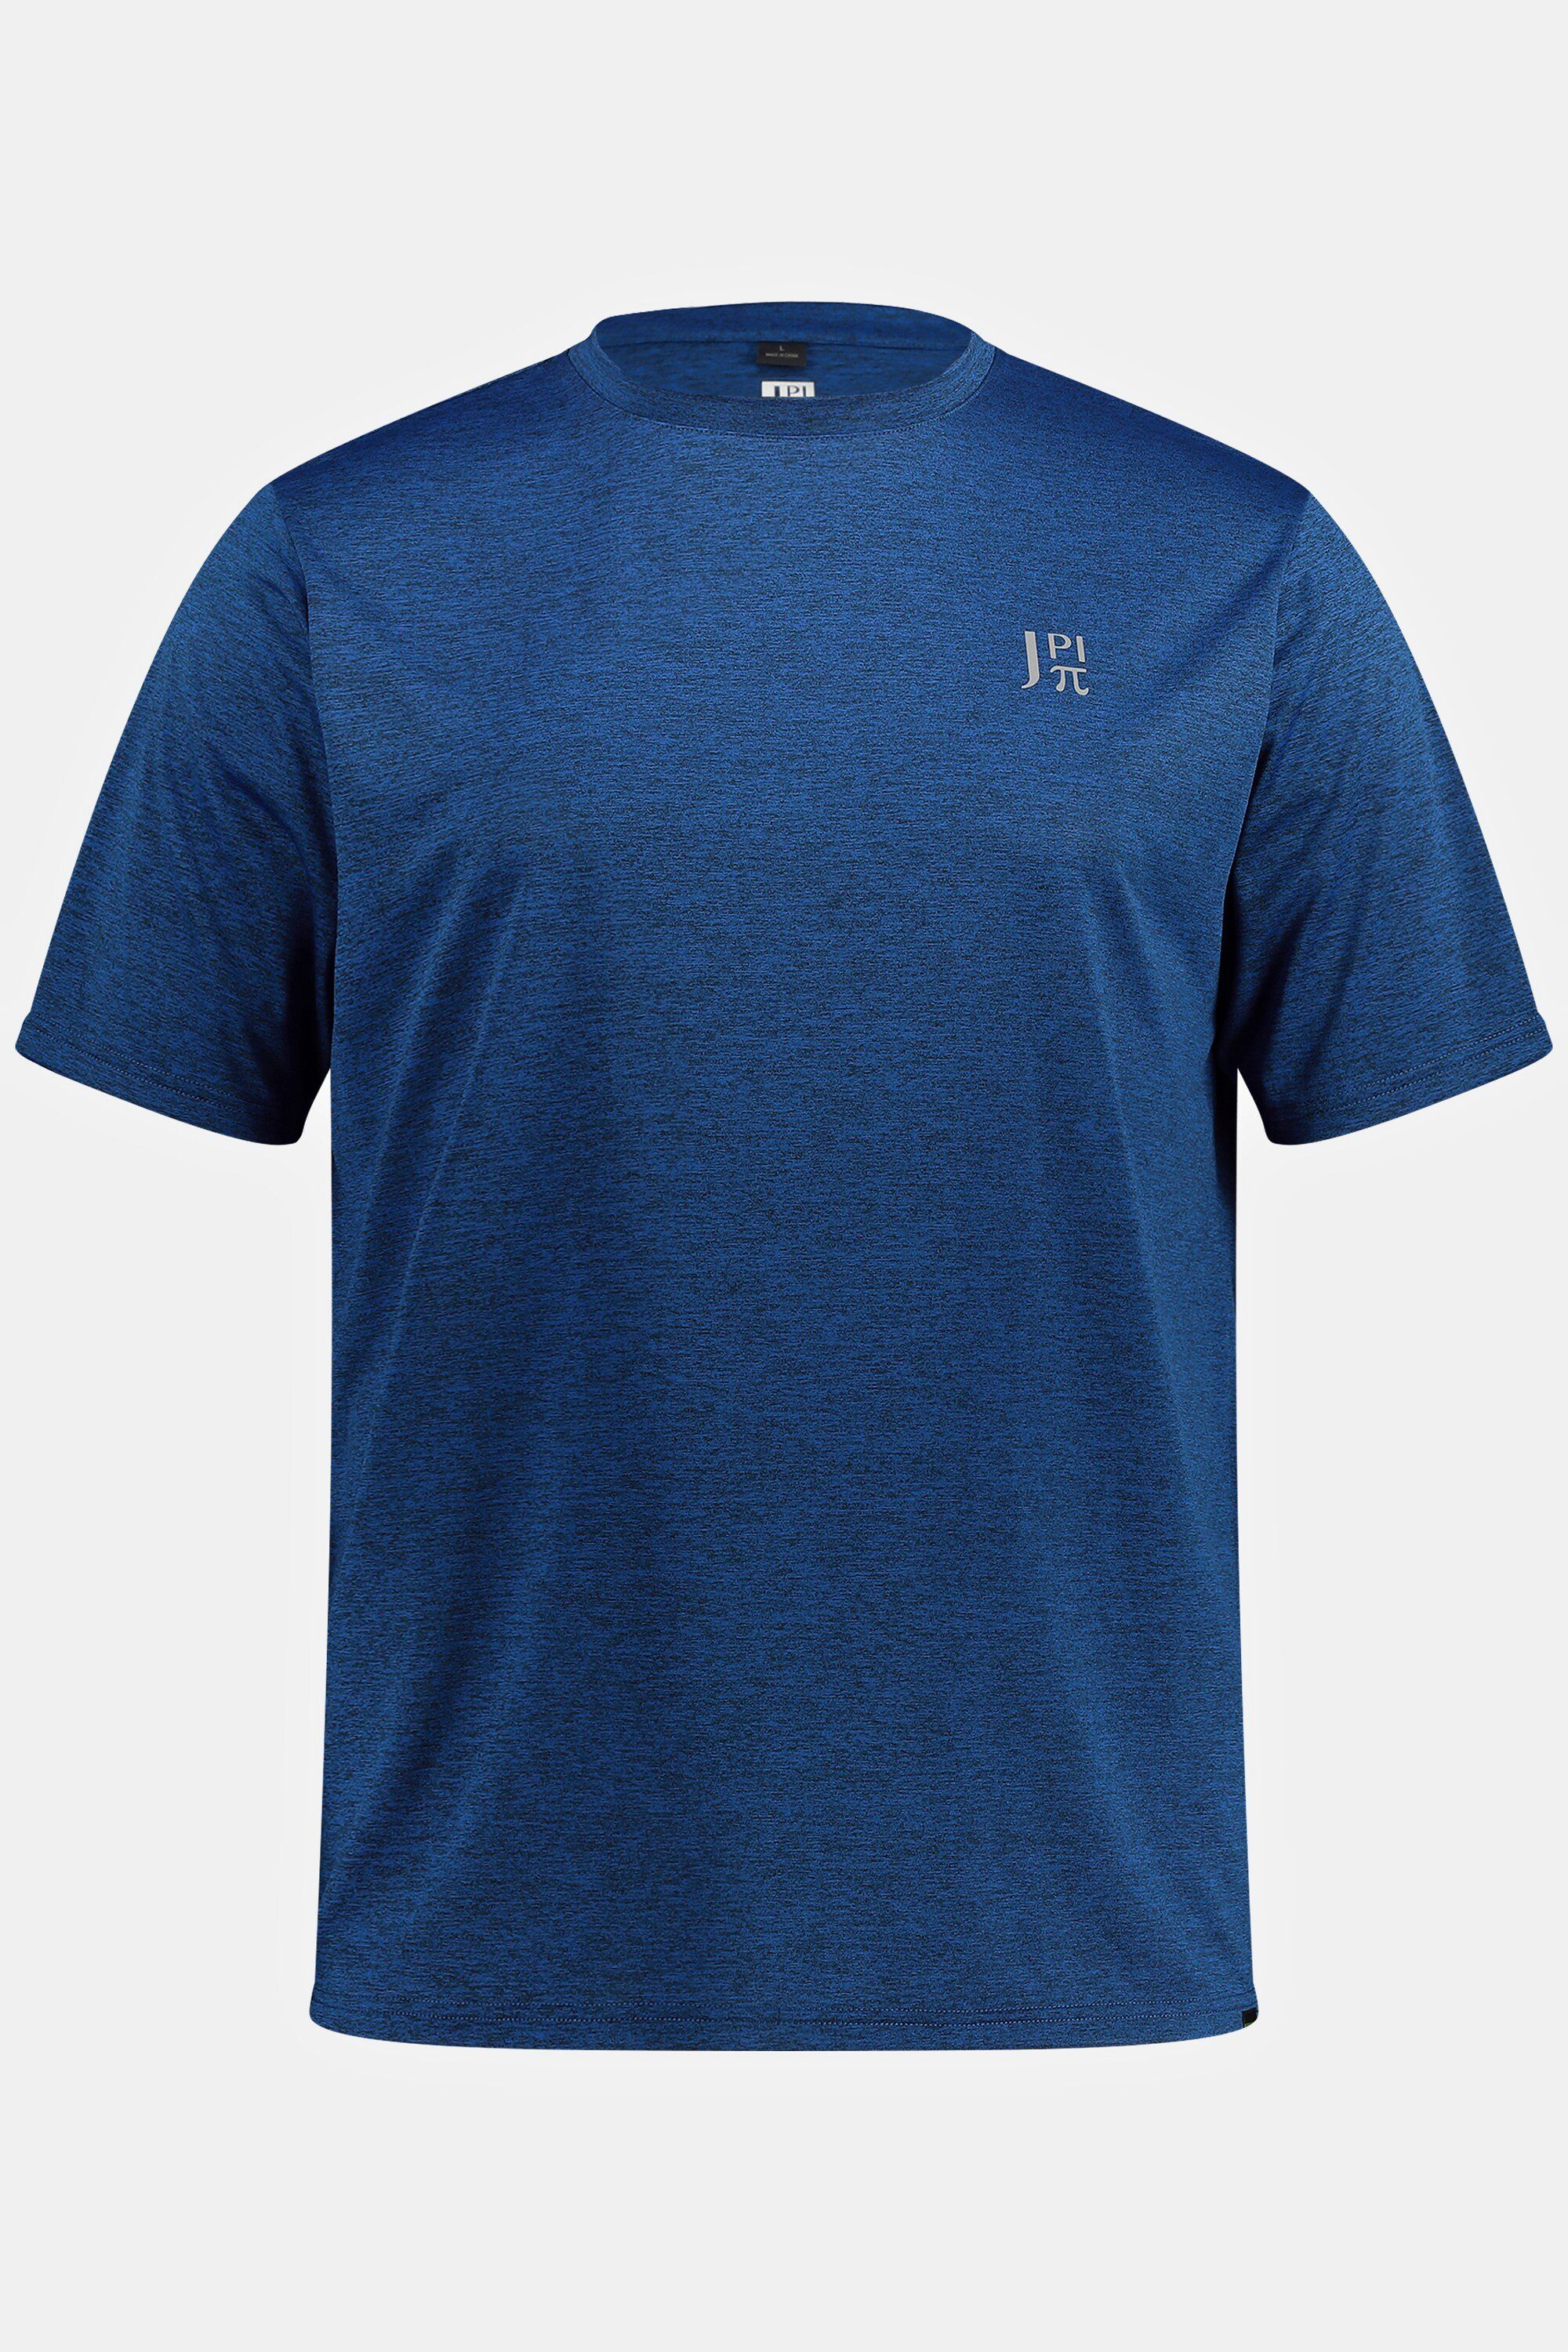 Funktions-Shirt blau Halbarm QuickDry JP1880 T-Shirt FLEXNAMIC®